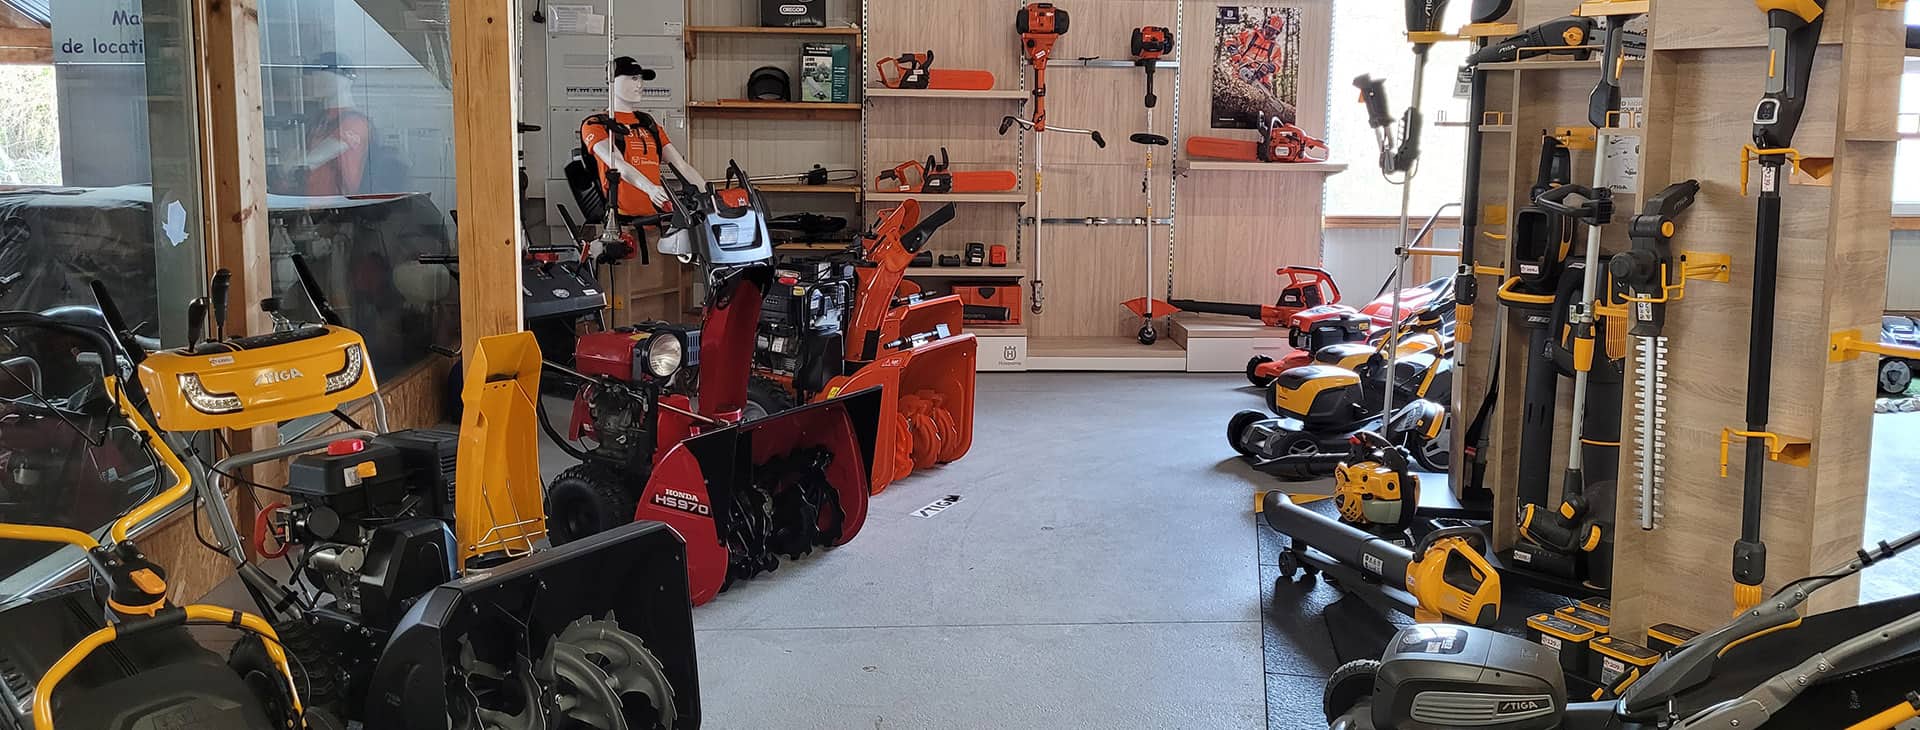 garage philippoz vente installation réparation robot tondeuse outil jardin moto scooter vélomoteur ayent valais suisse